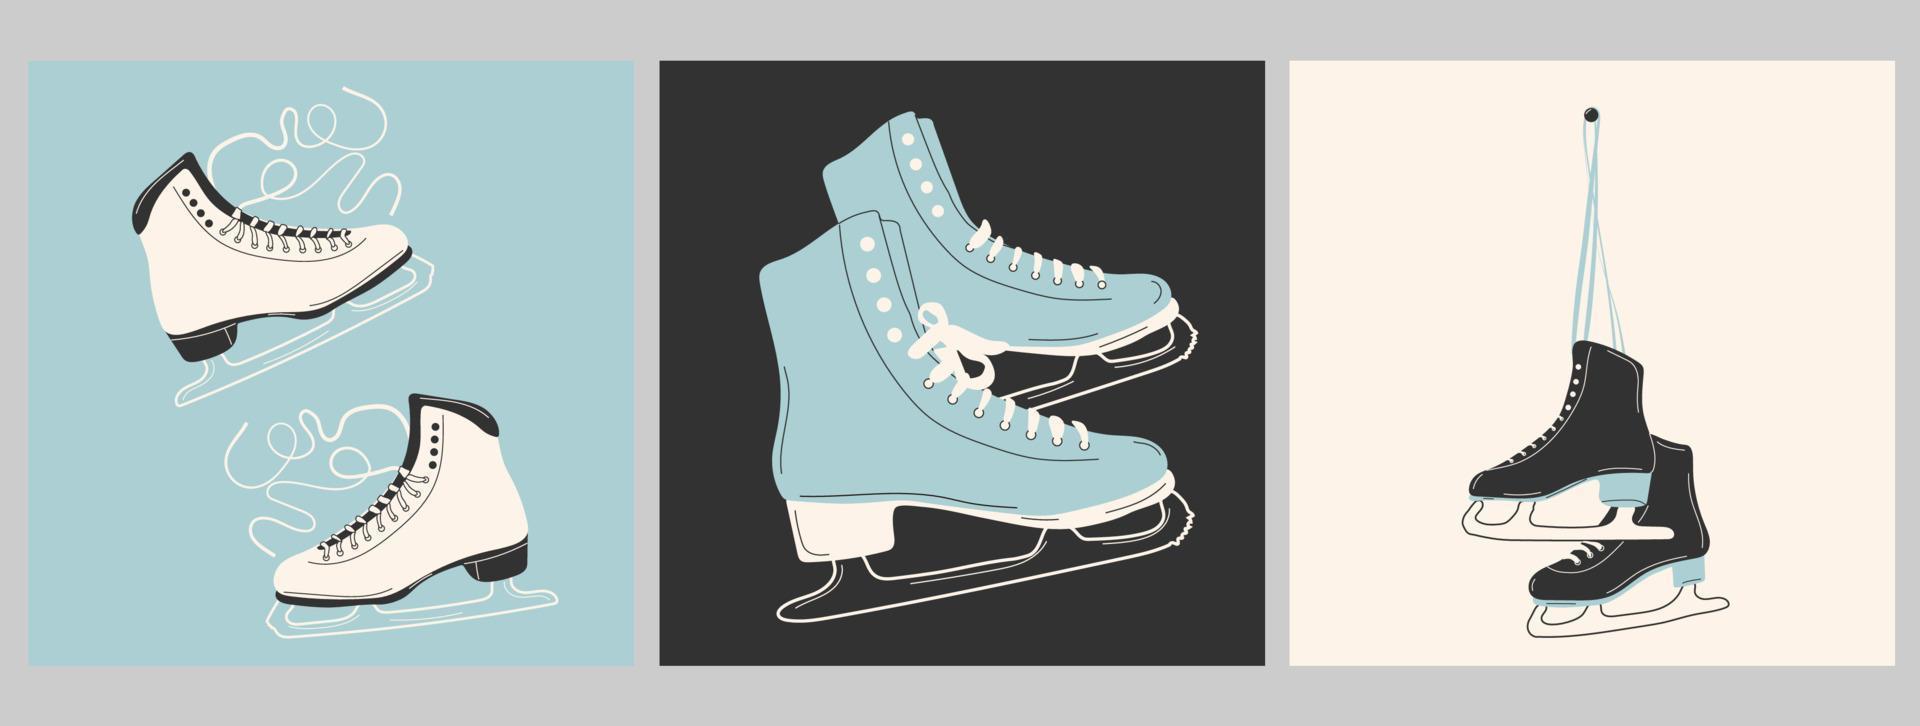 juego de tres patines de hielo para patinaje artístico en invierno. pista de patinaje al aire libre. ilustraciones vectoriales dibujadas a mano vector